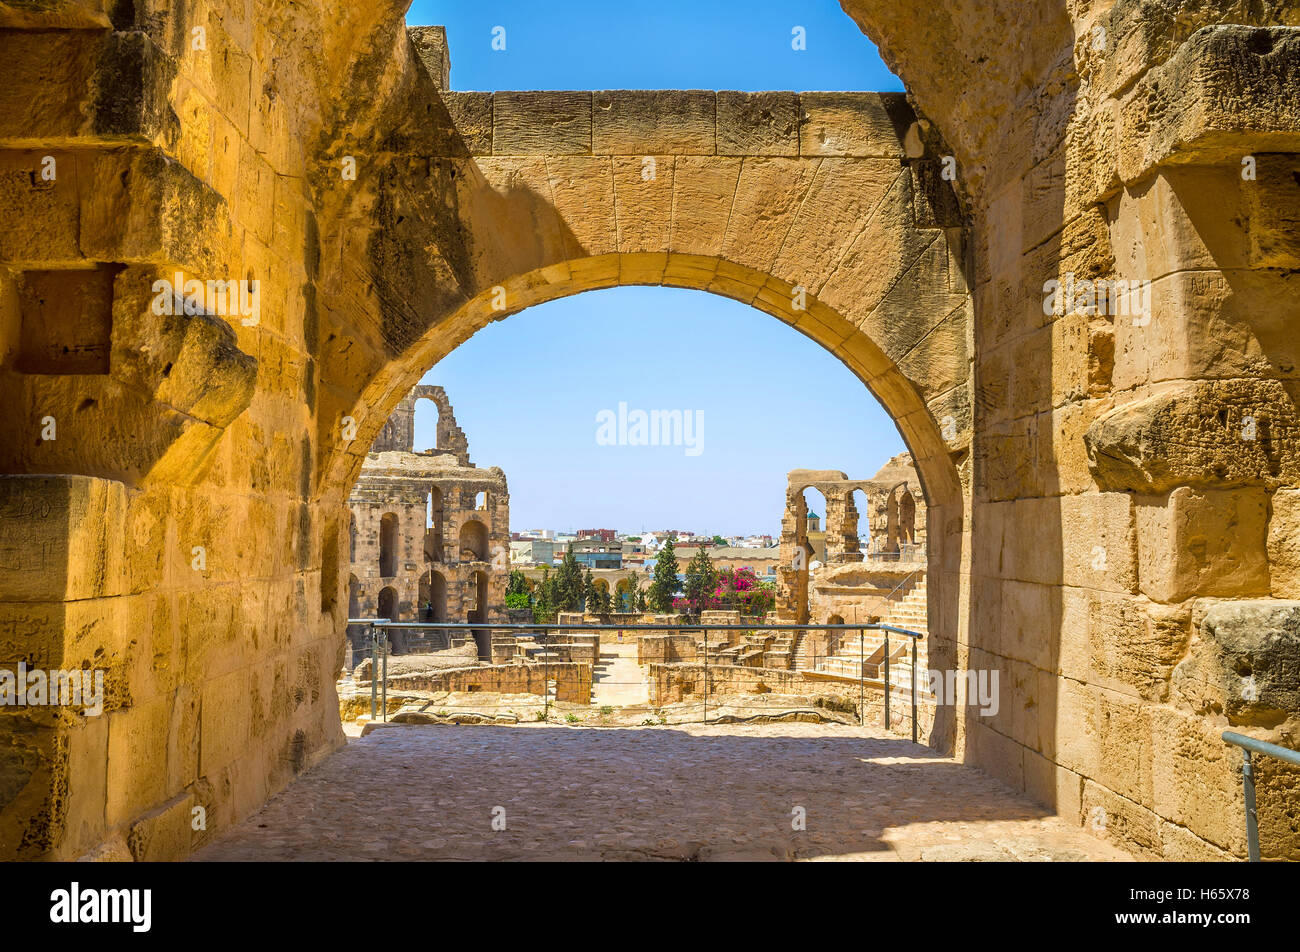 La vista de las ruinas romanas de anfiteatro a través del arco de su hall, el JEM, Túnez. Foto de stock